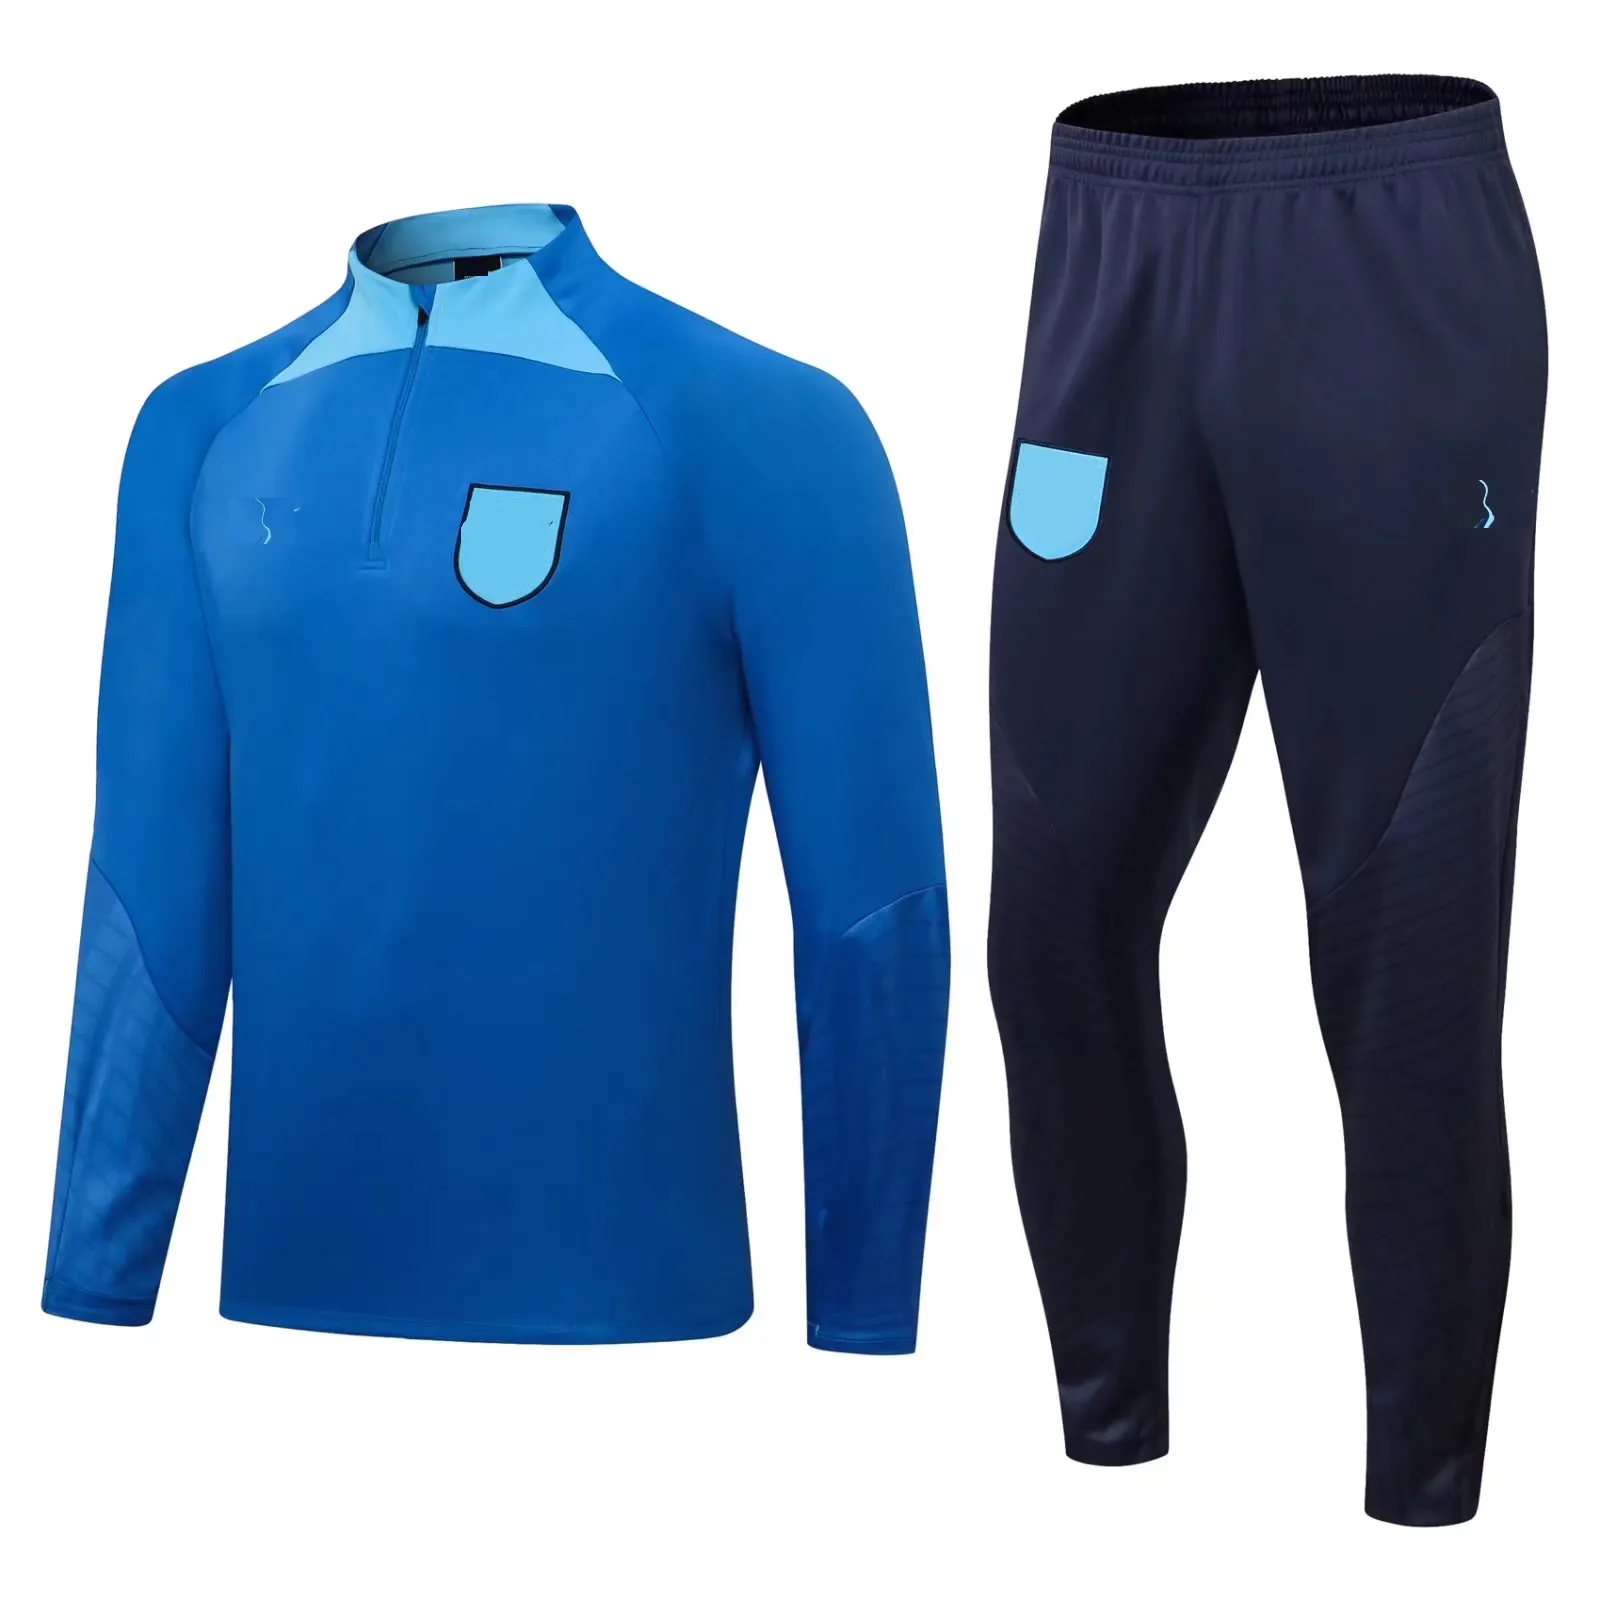 22-23 Inglaterra Fatos de treino masculino emblema bordado lazer esportes terno roupas ao ar livre camisa de treinamento esportivo